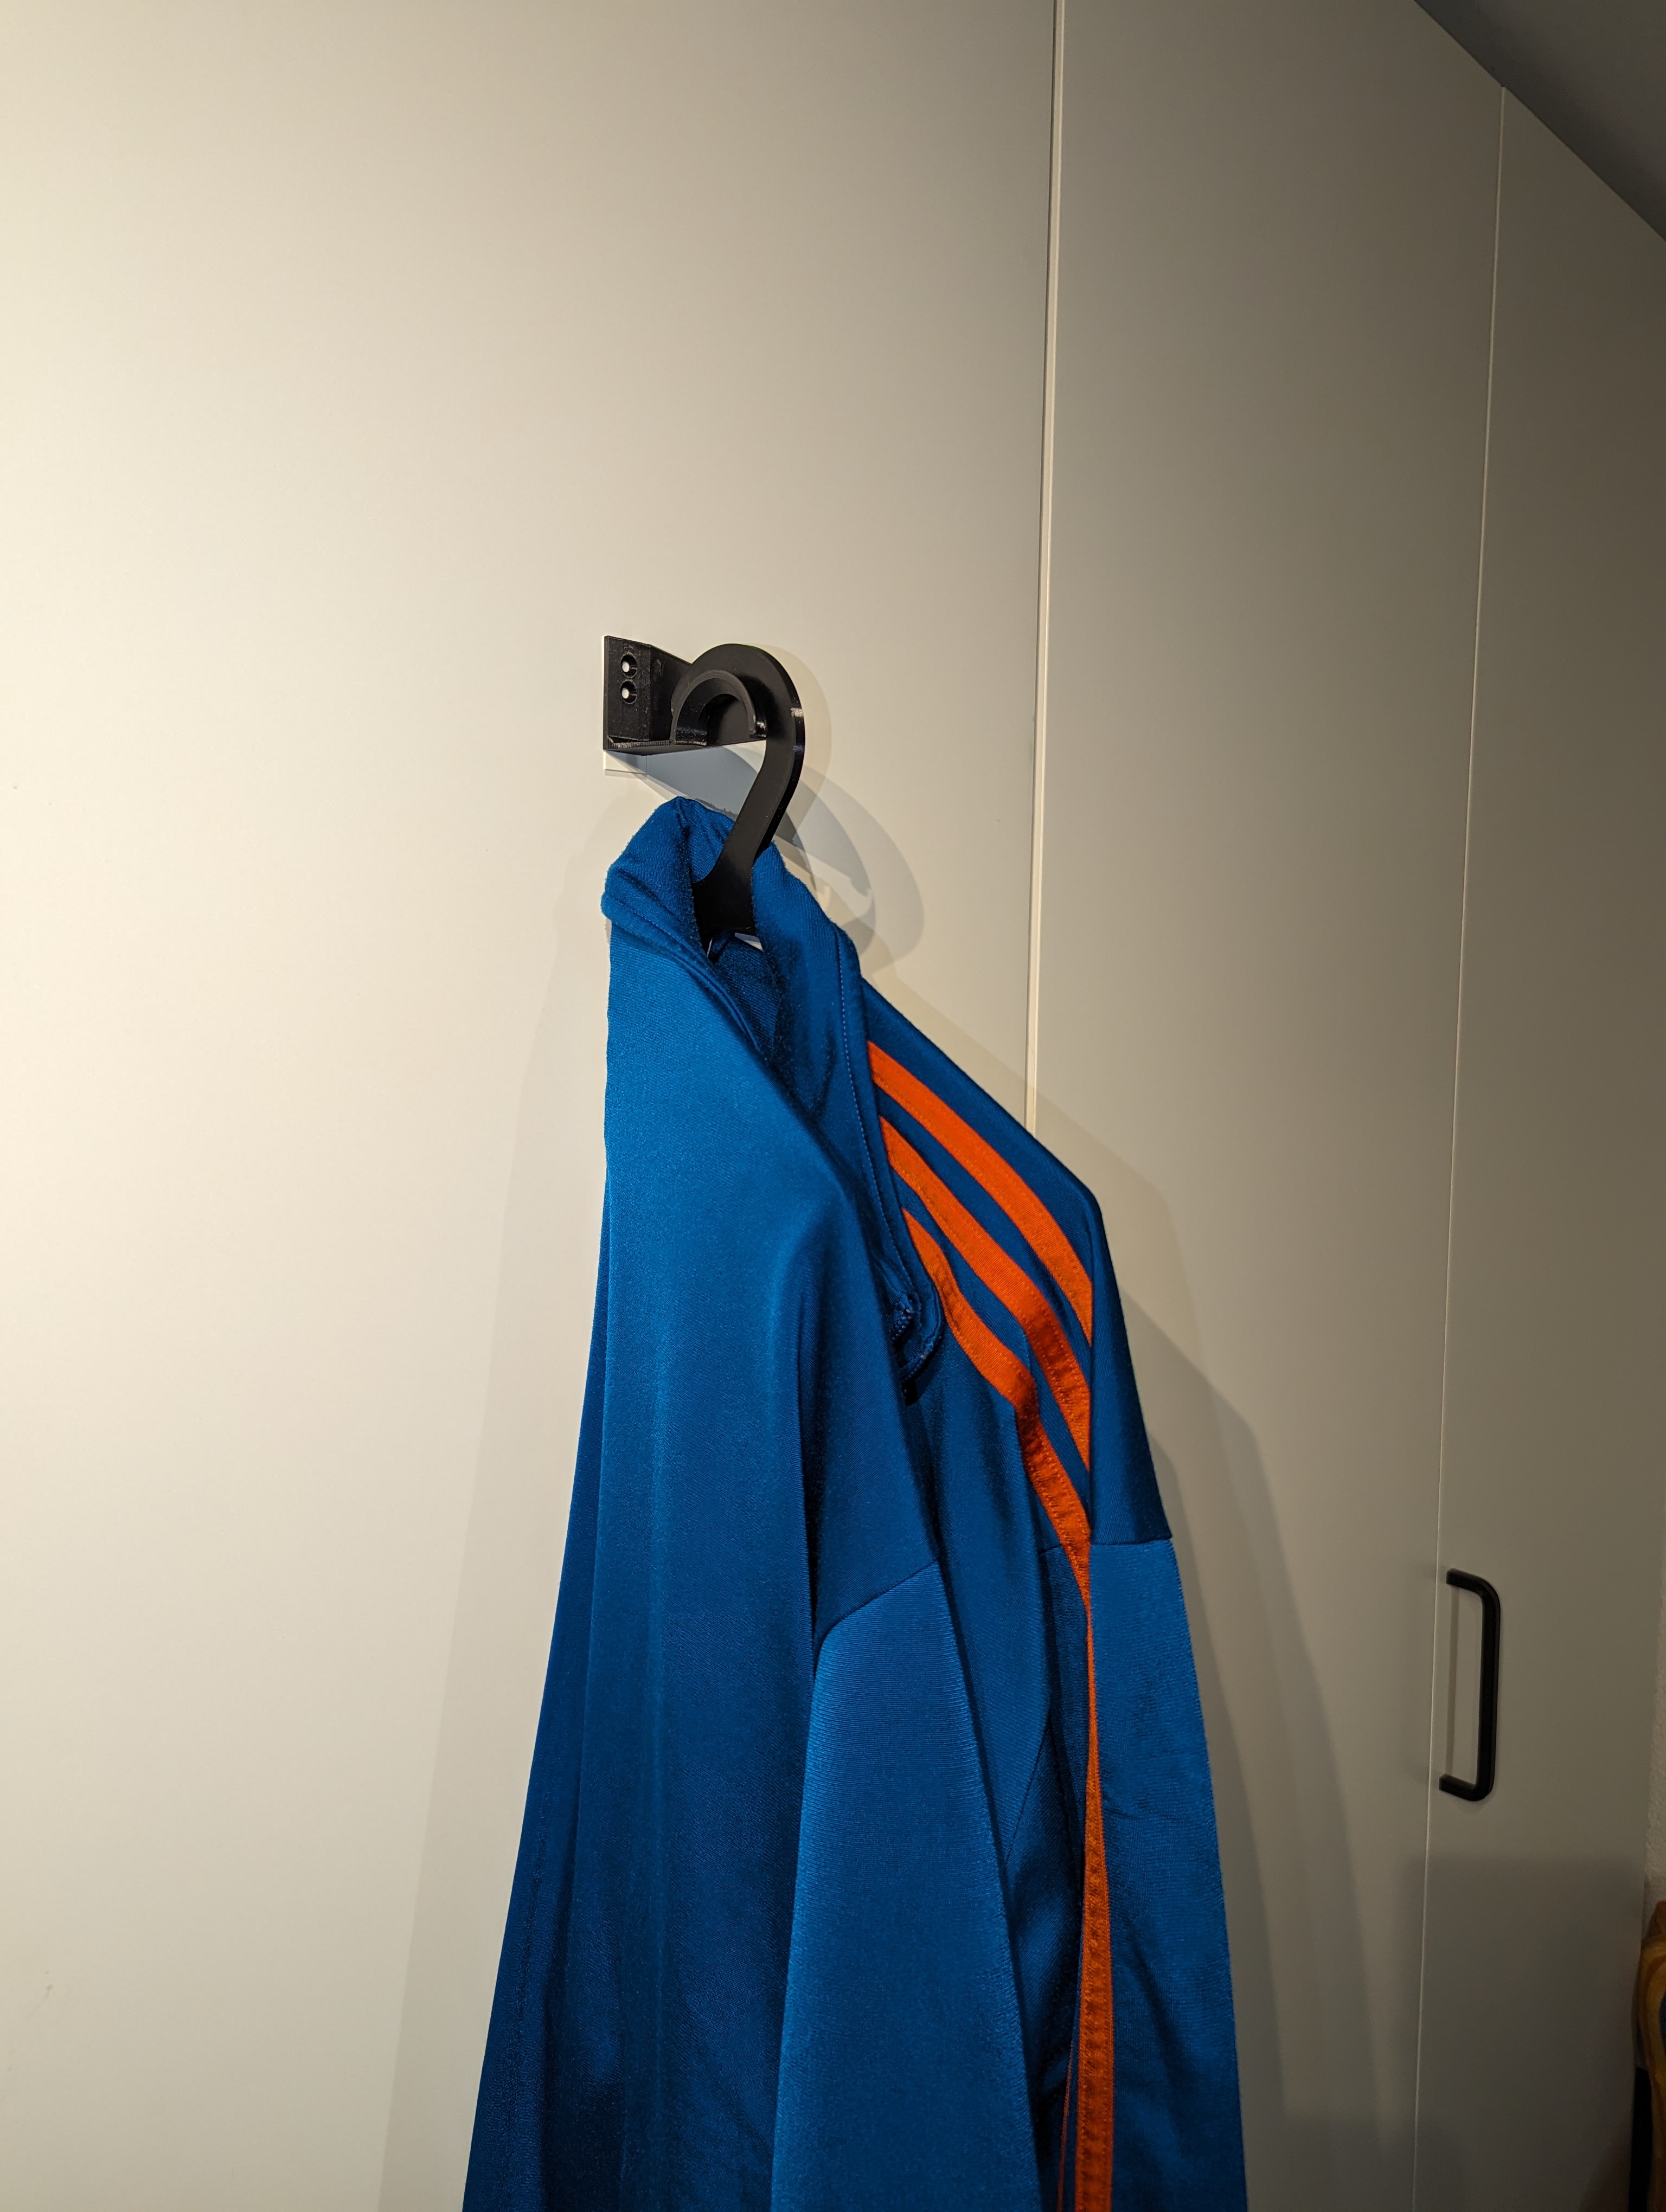 Simone Giertz Makes a Coat Hanger for Coat Hangers 